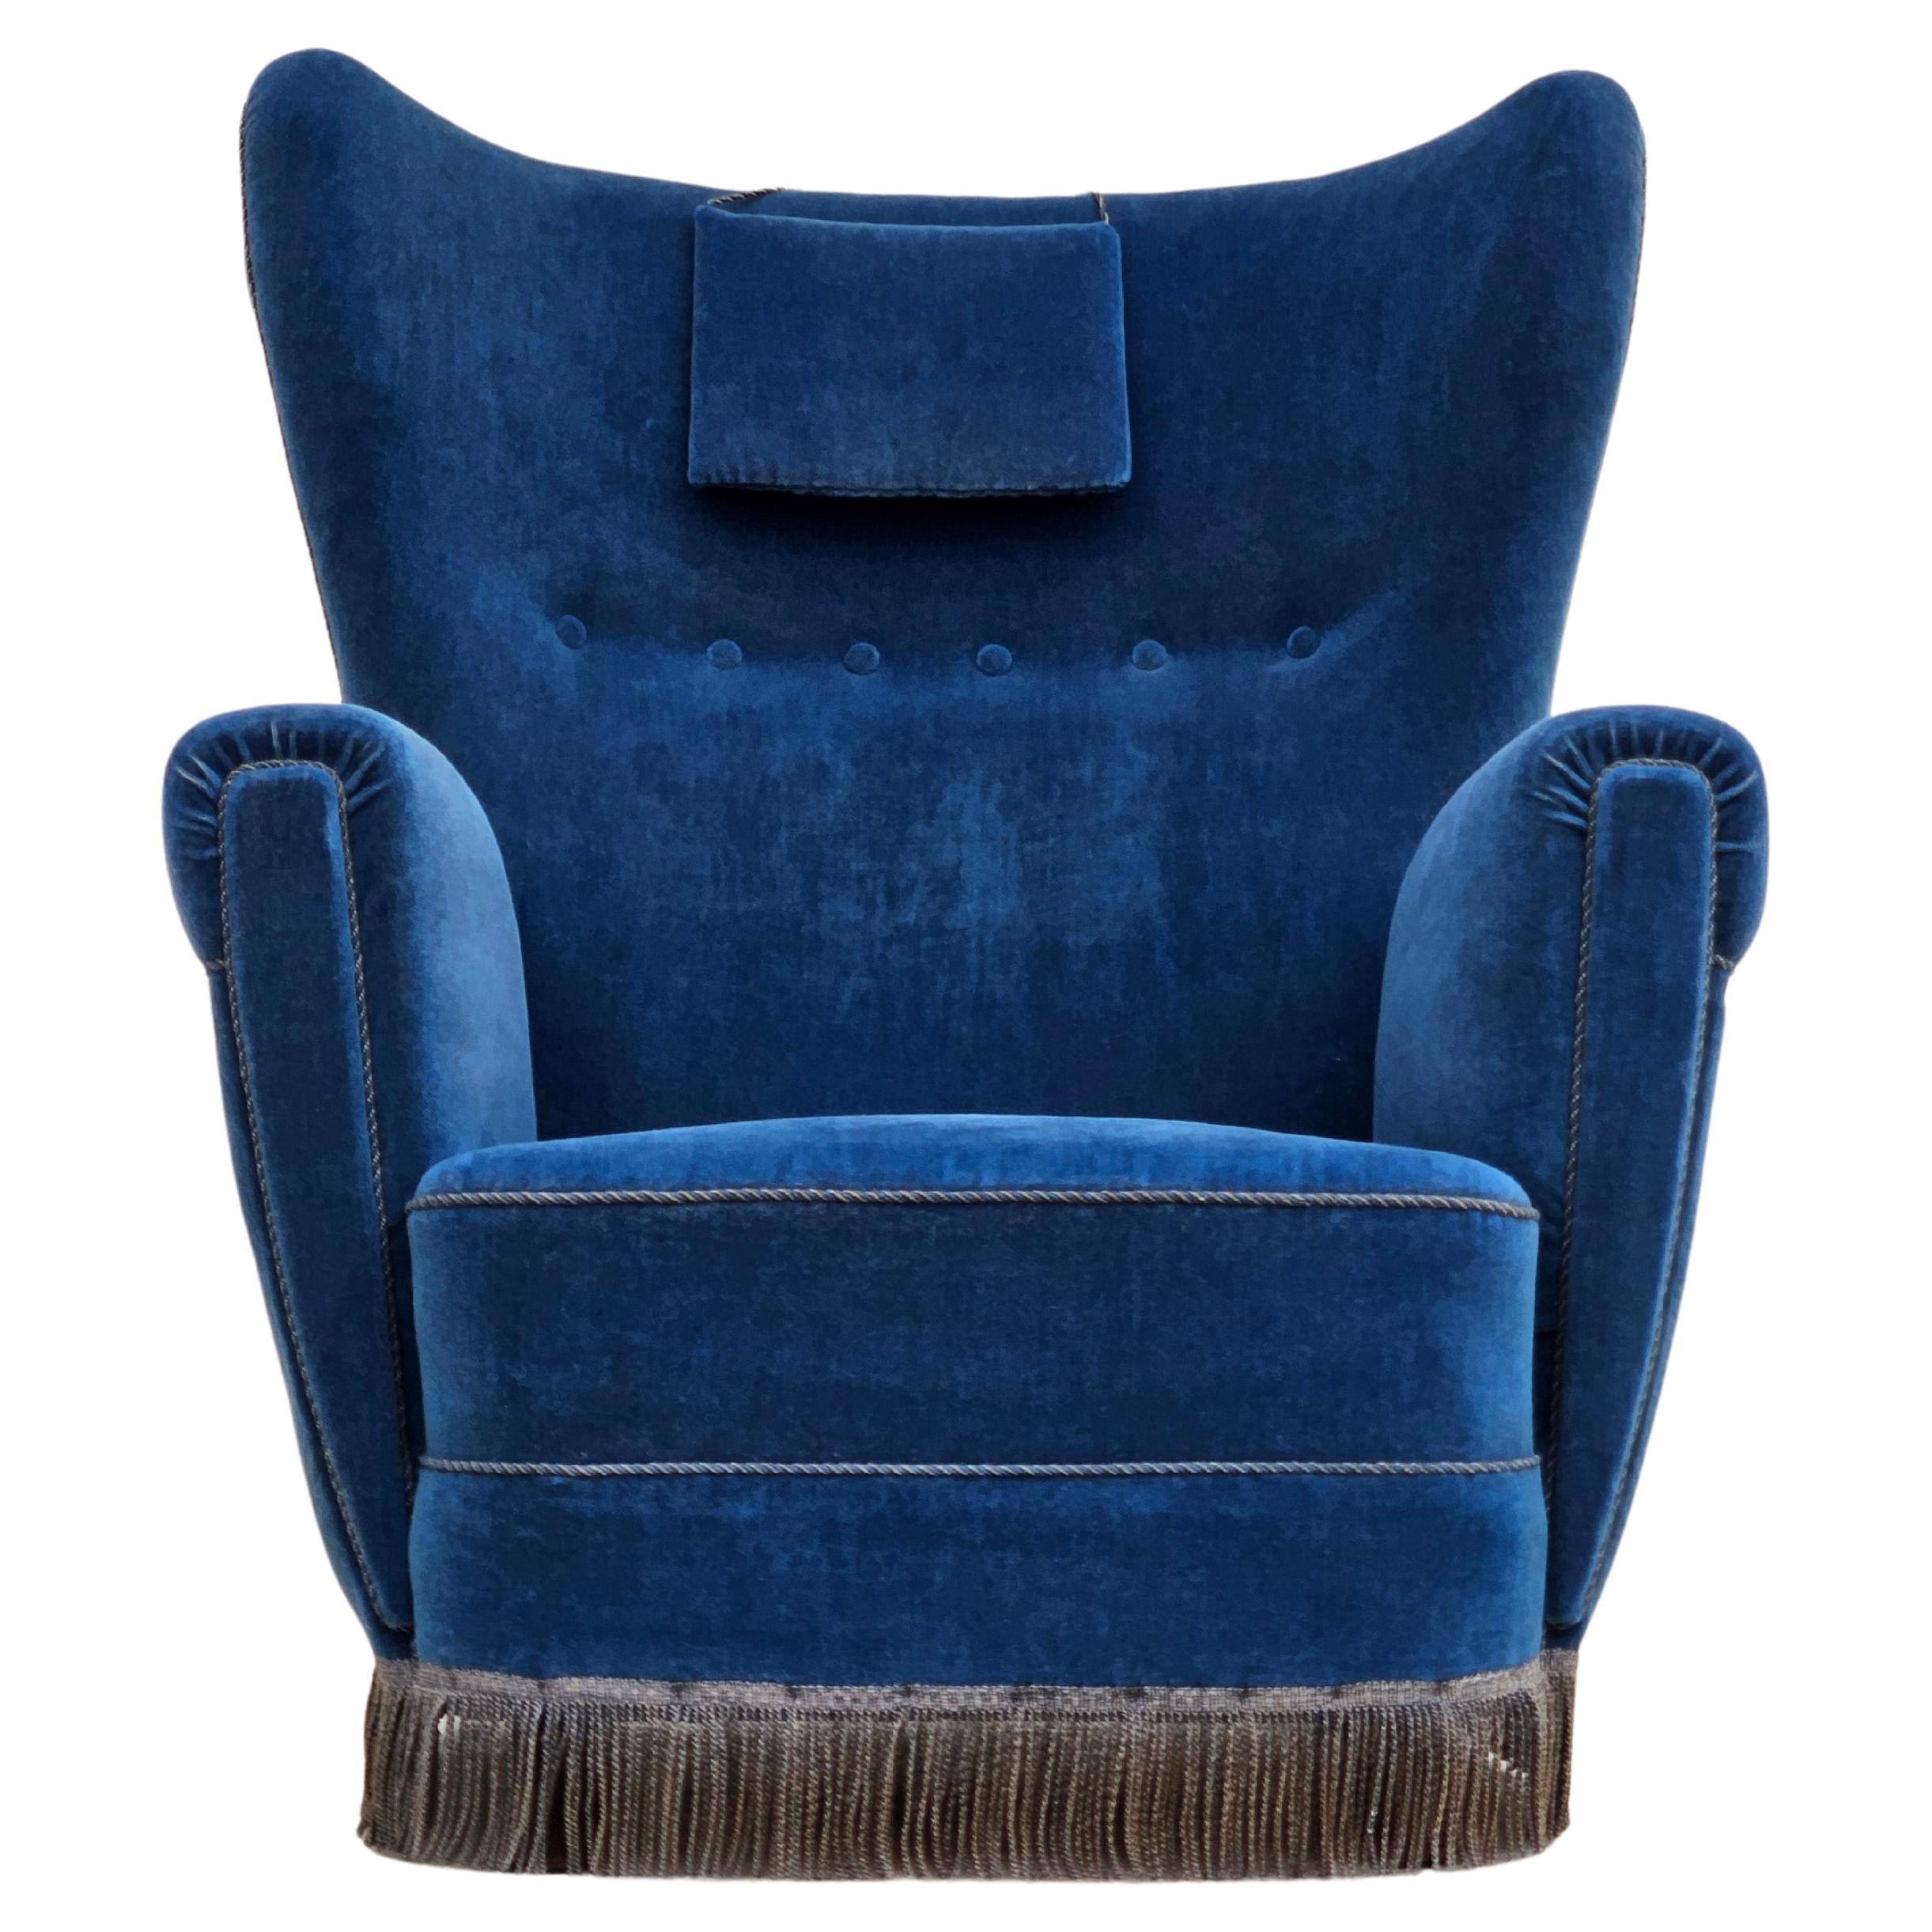 1960er Jahre, dänischer Sessel mit hoher Rückenlehne in sehr gutem Originalzustand: keine Gerüche und keine Flecken. Blauer Möbelvelours, Buchenholzbeine, Messingfedern im Sitz, Nackenkissen. Hergestellt von einem dänischen Möbelhersteller etwa in